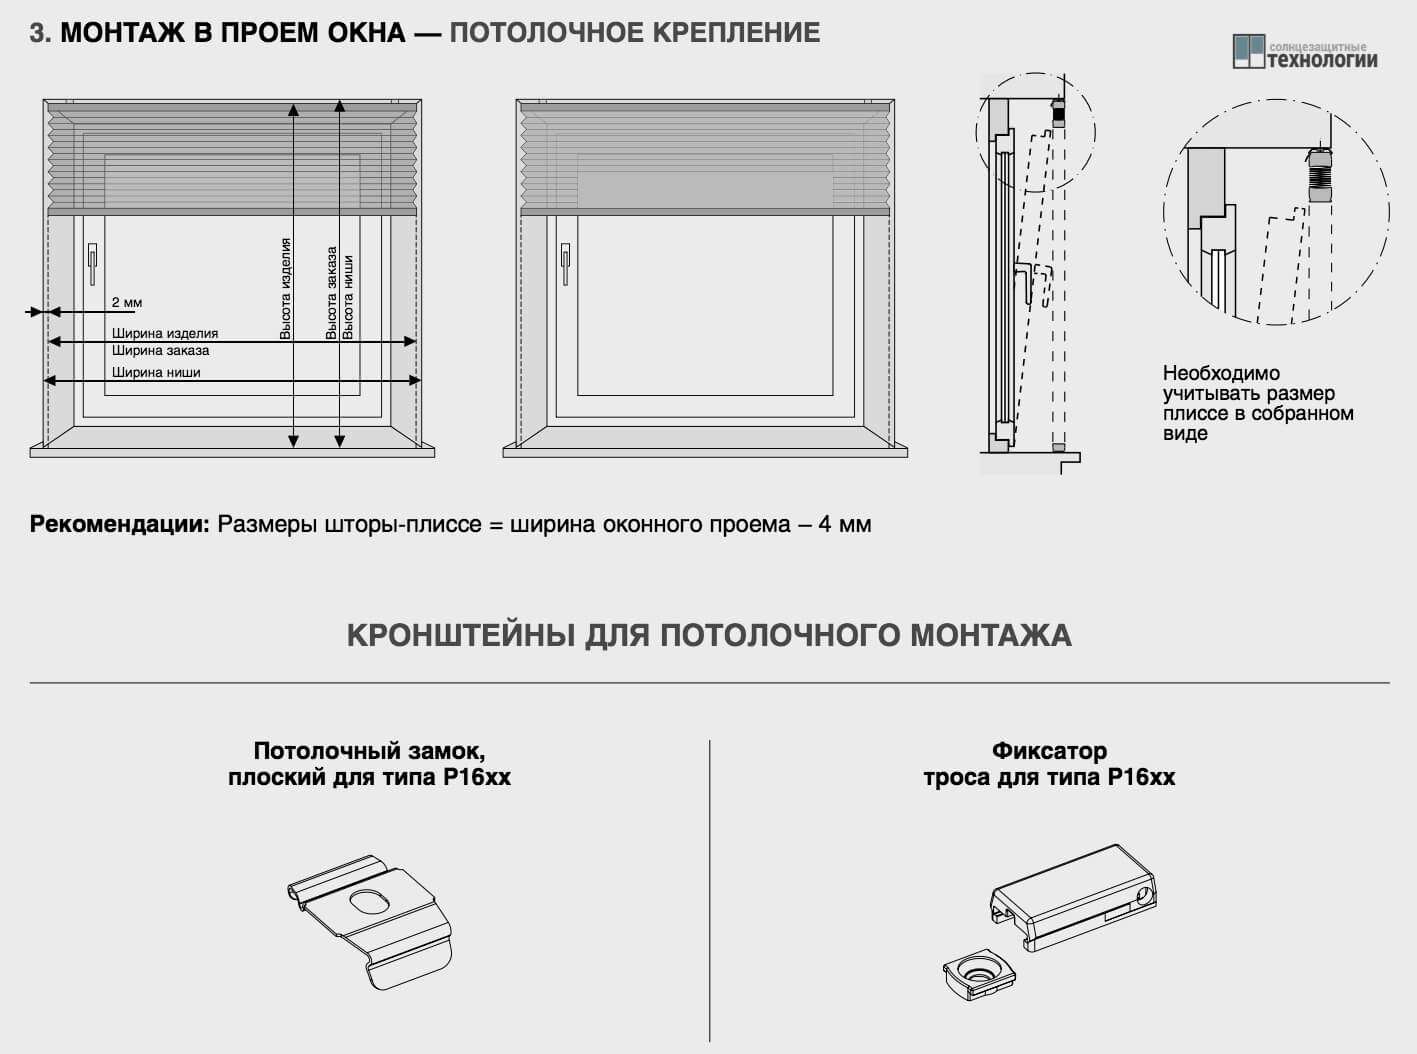 Как крепятся римские шторы на пластиковые окна - крепление: как вешать, установка, как правильно установить и куда прикрепить